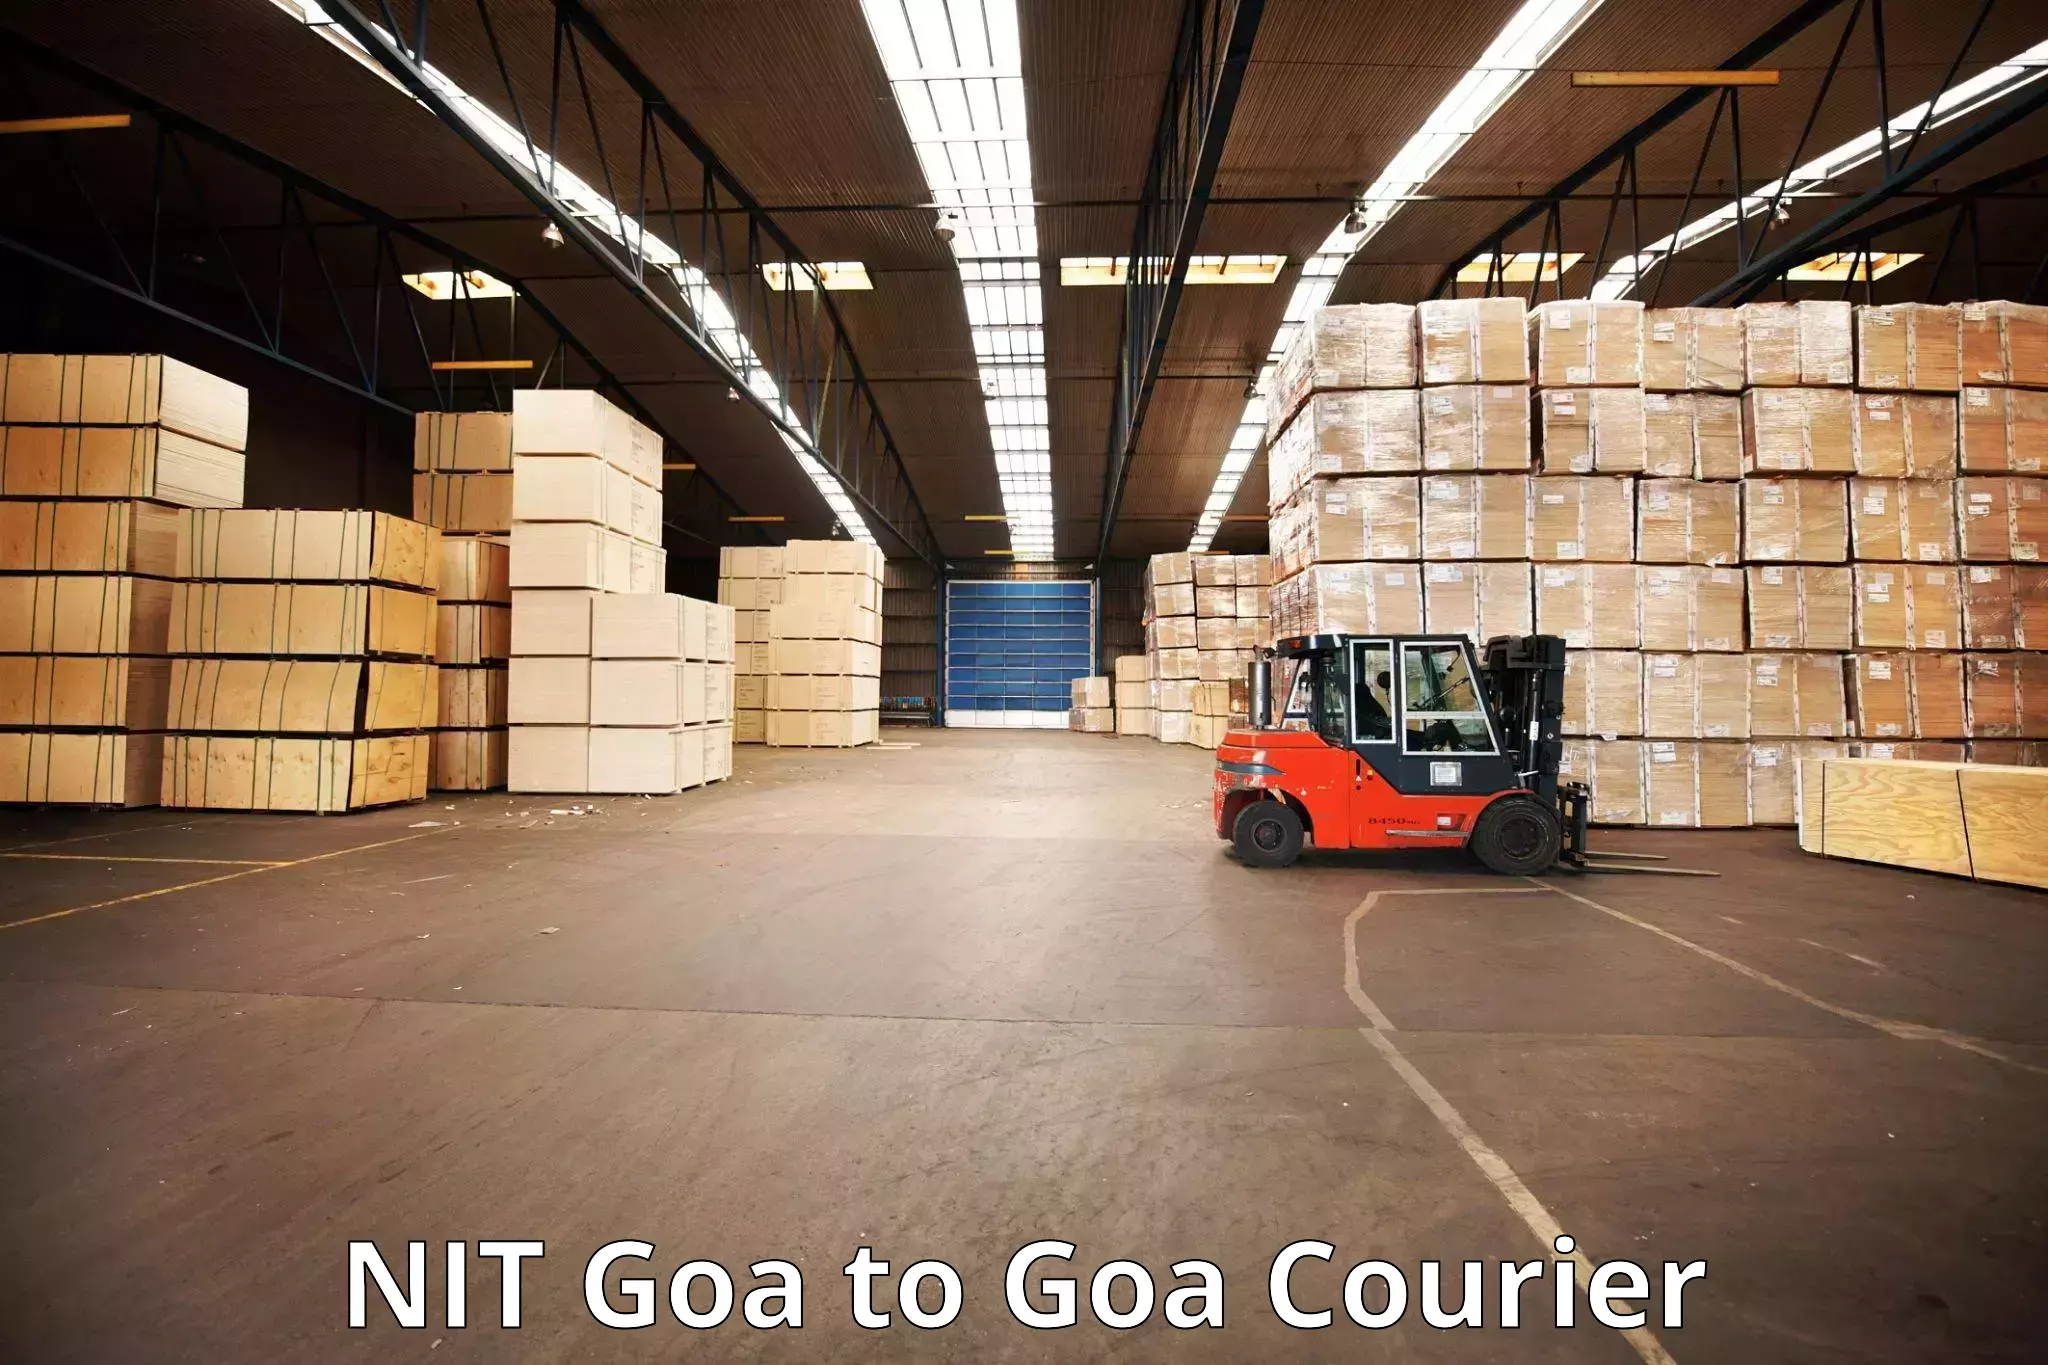 Same day luggage service NIT Goa to Goa